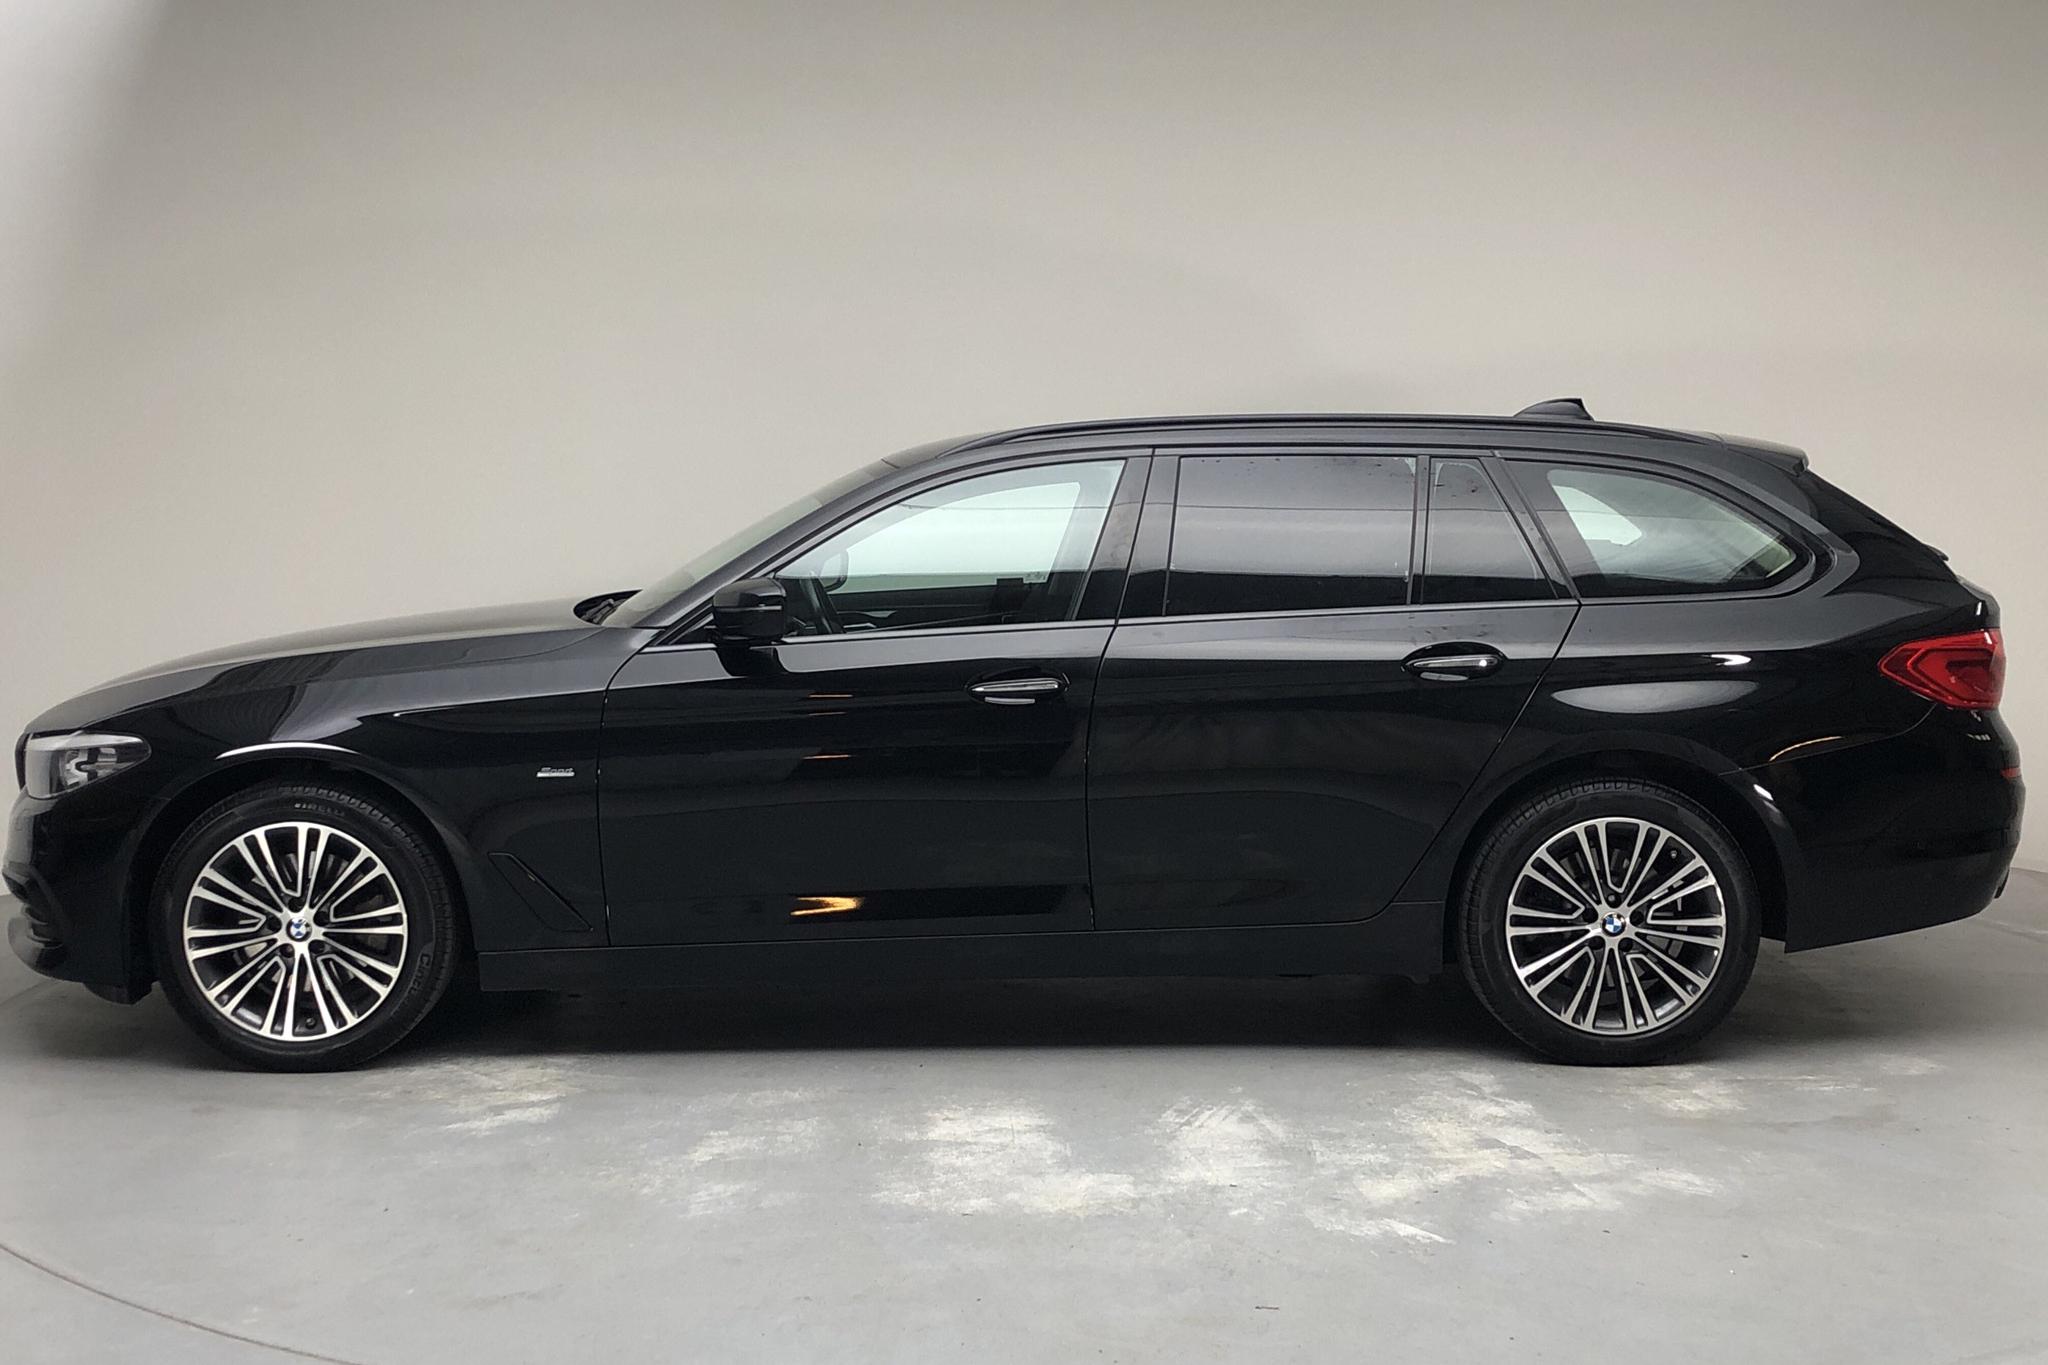 BMW 520d xDrive Touring, G31 (190hk) - 137 020 km - Automatic - black - 2018